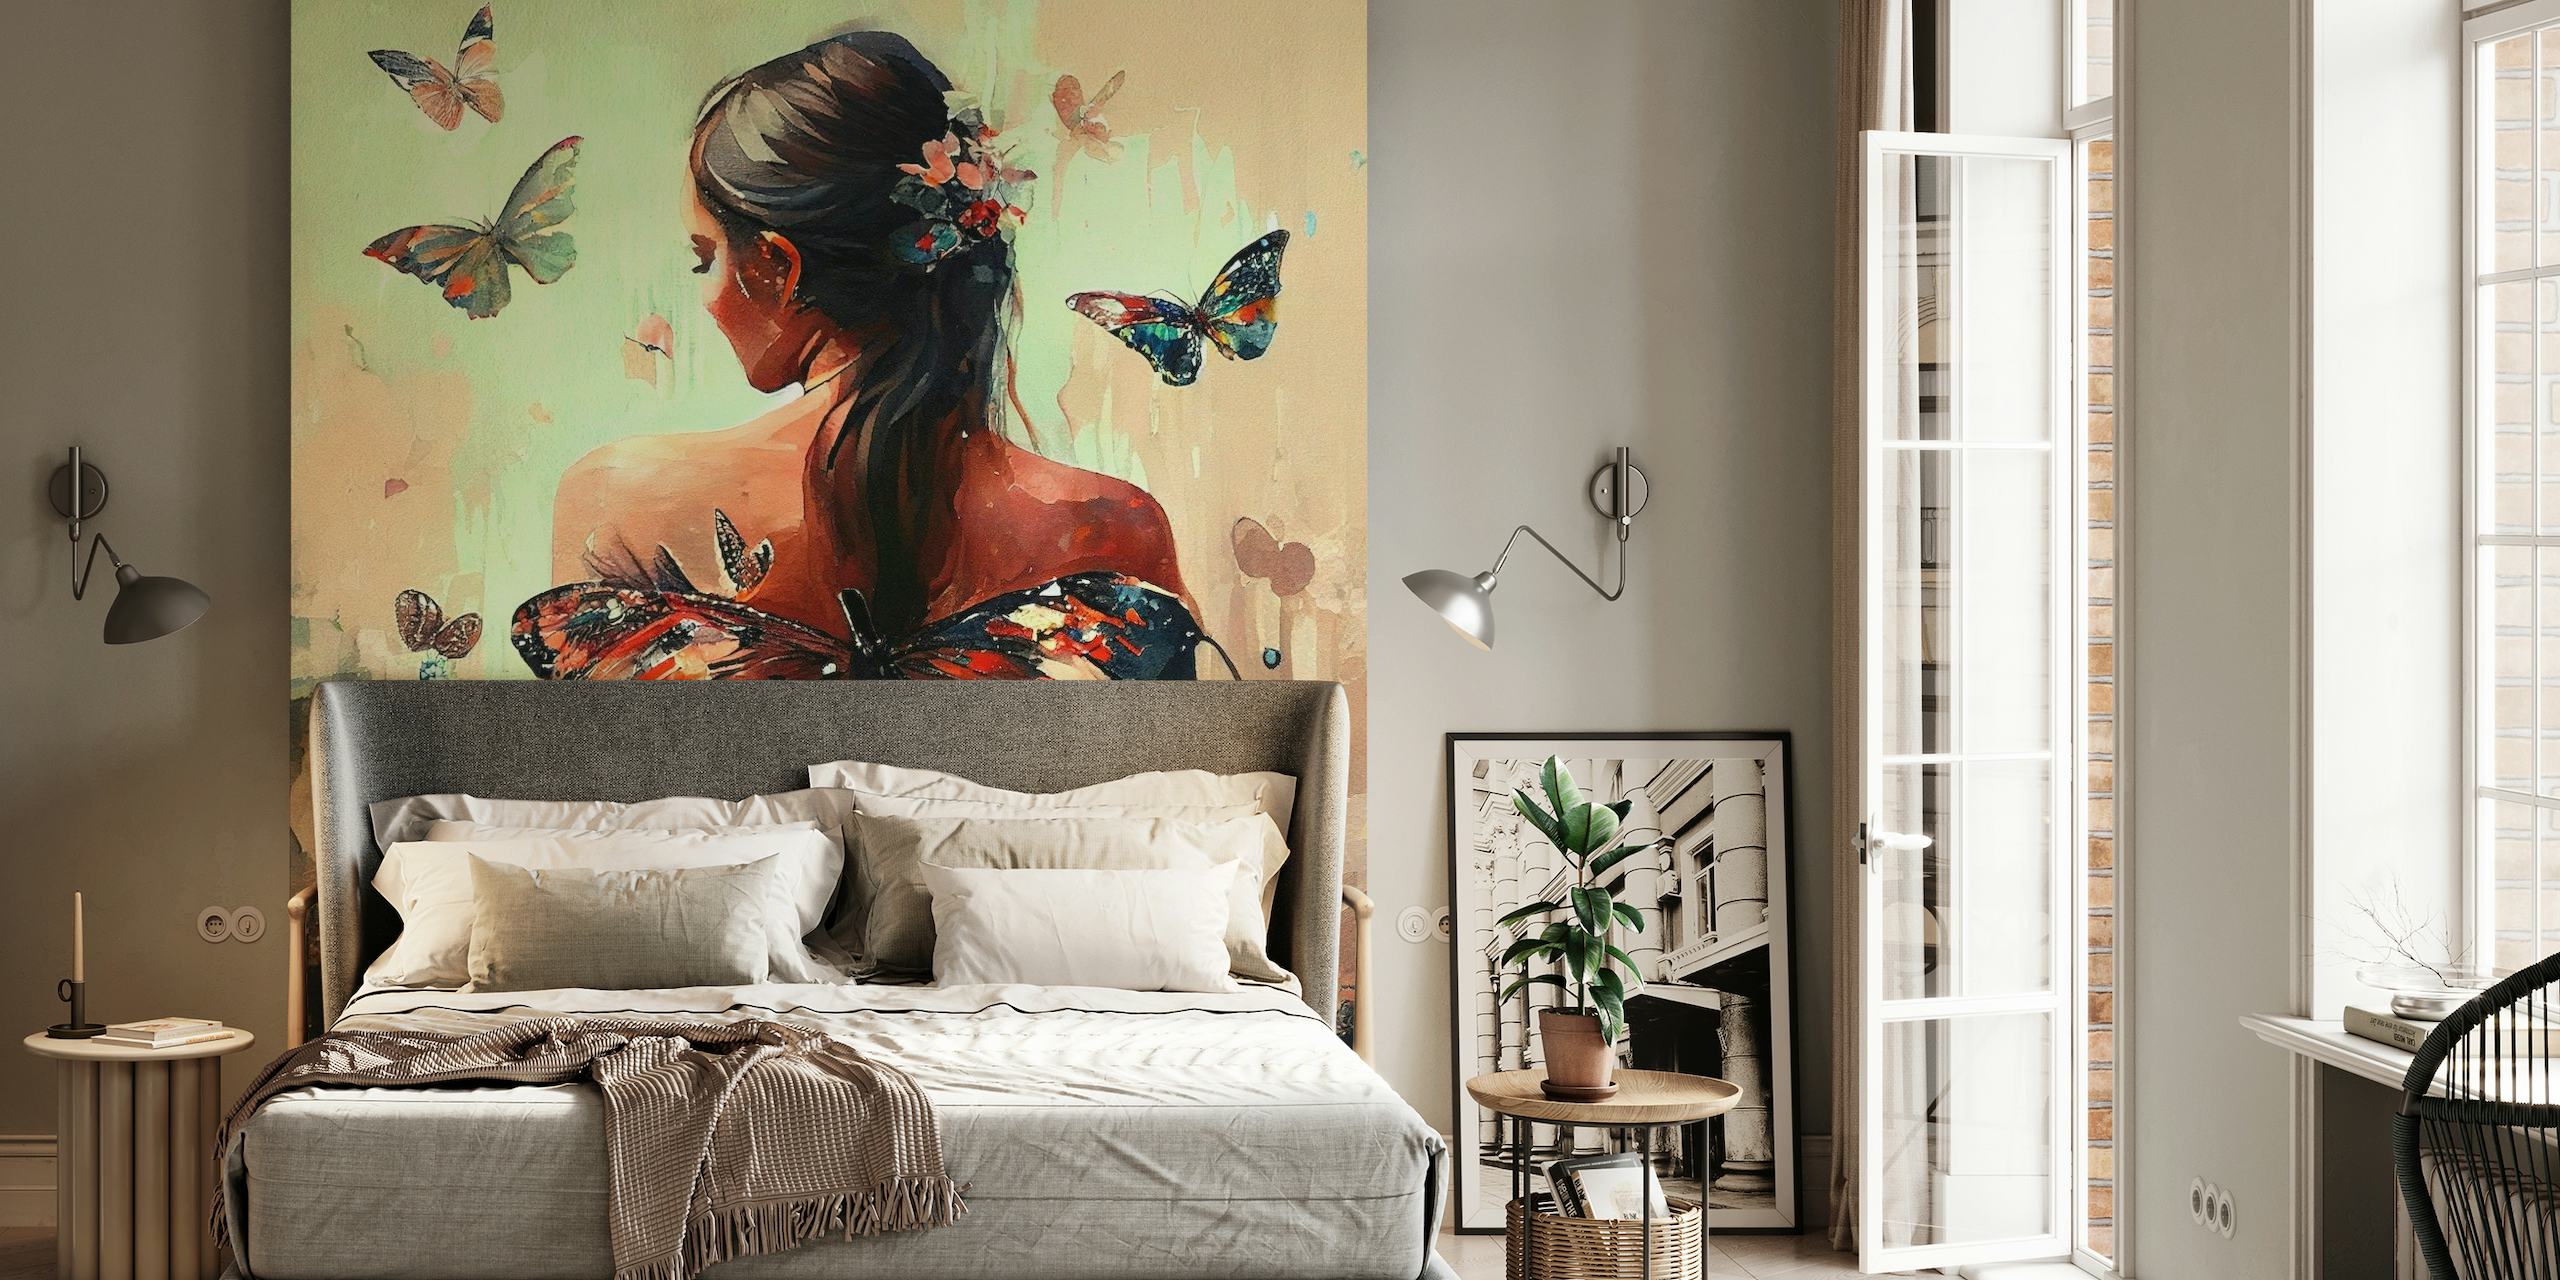 Powerful Butterfly Woman Body #3 wallpaper